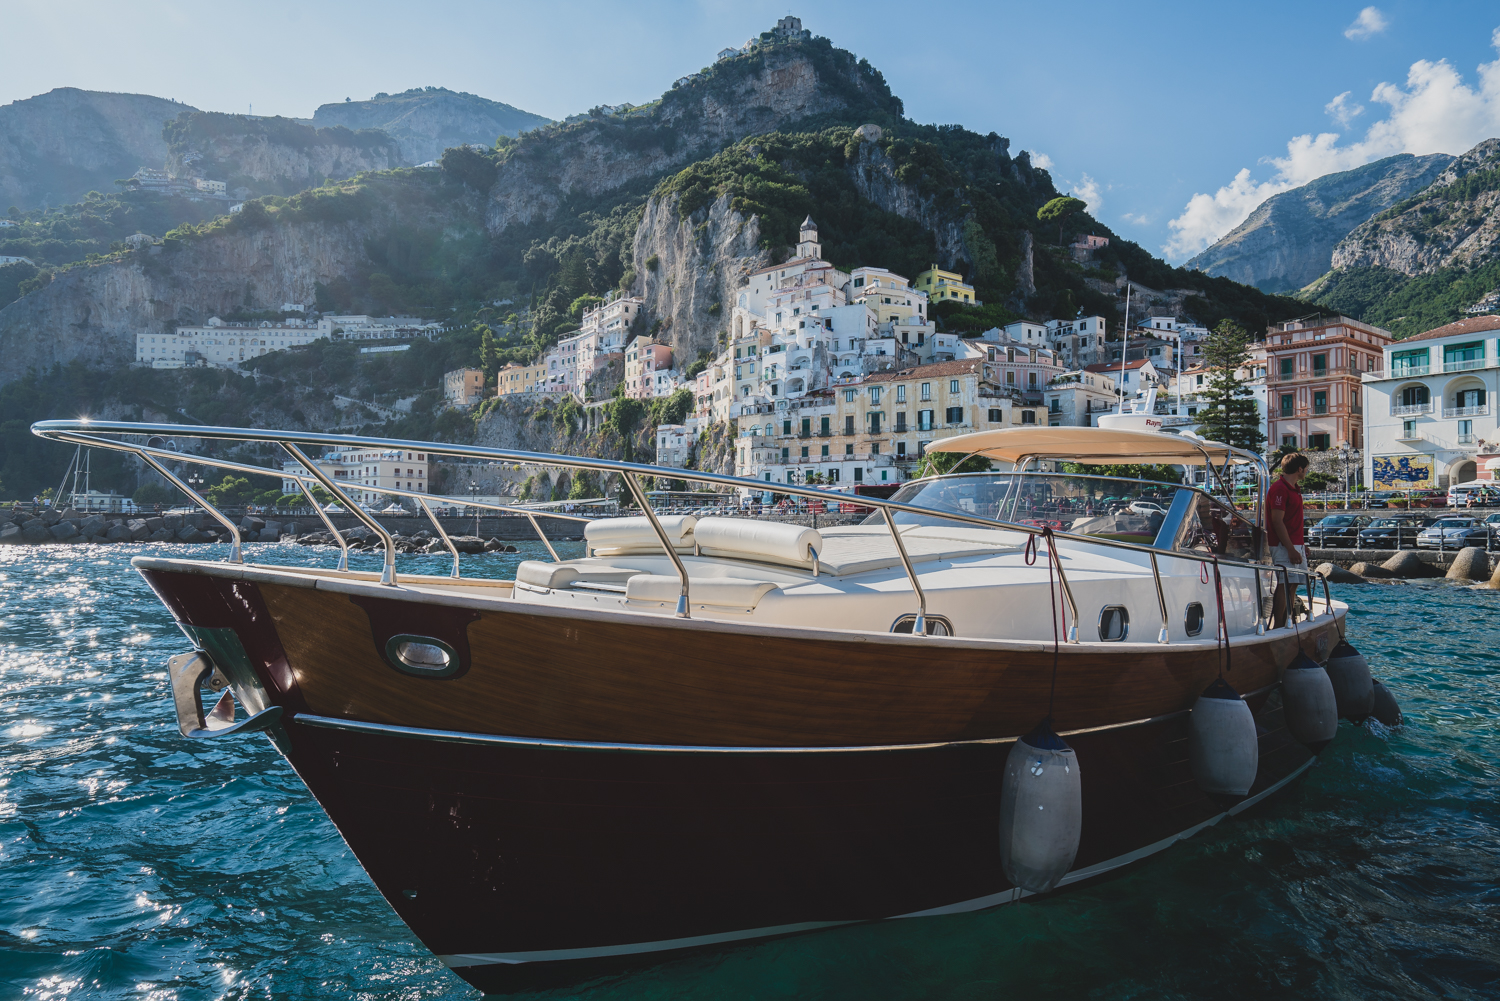 A boat in Amalfi Coast, Italy. (Photo by Jeff Lombardo)